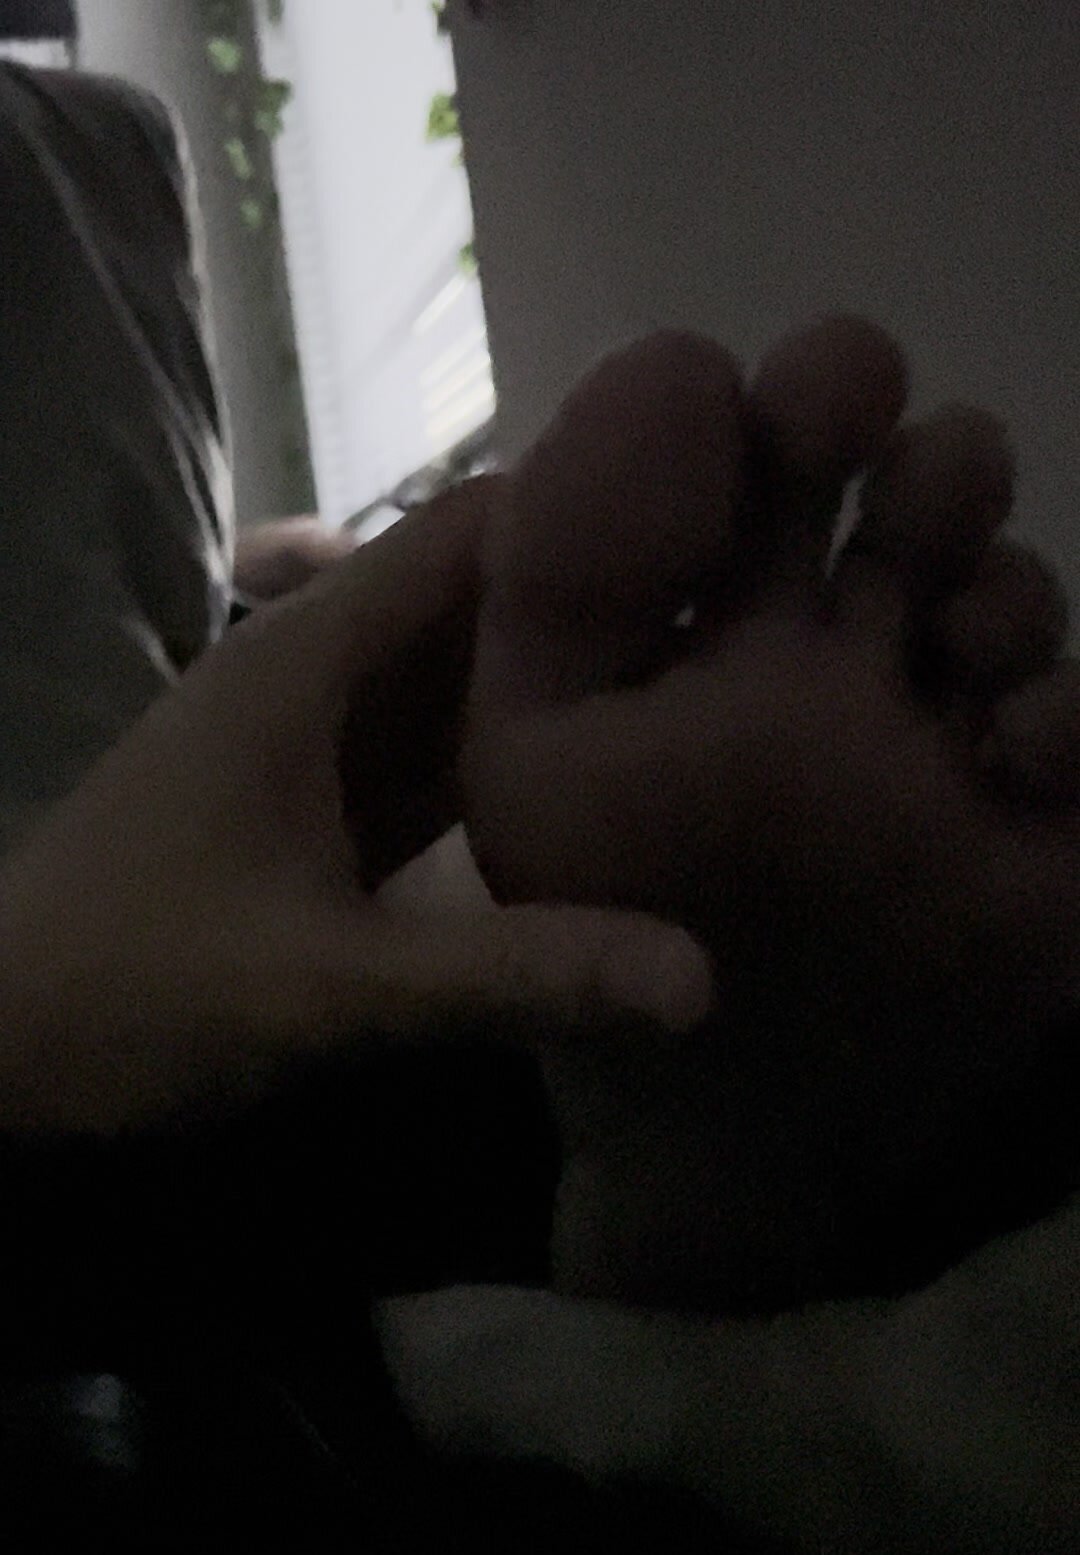 snoring friends boyfriend jock feet